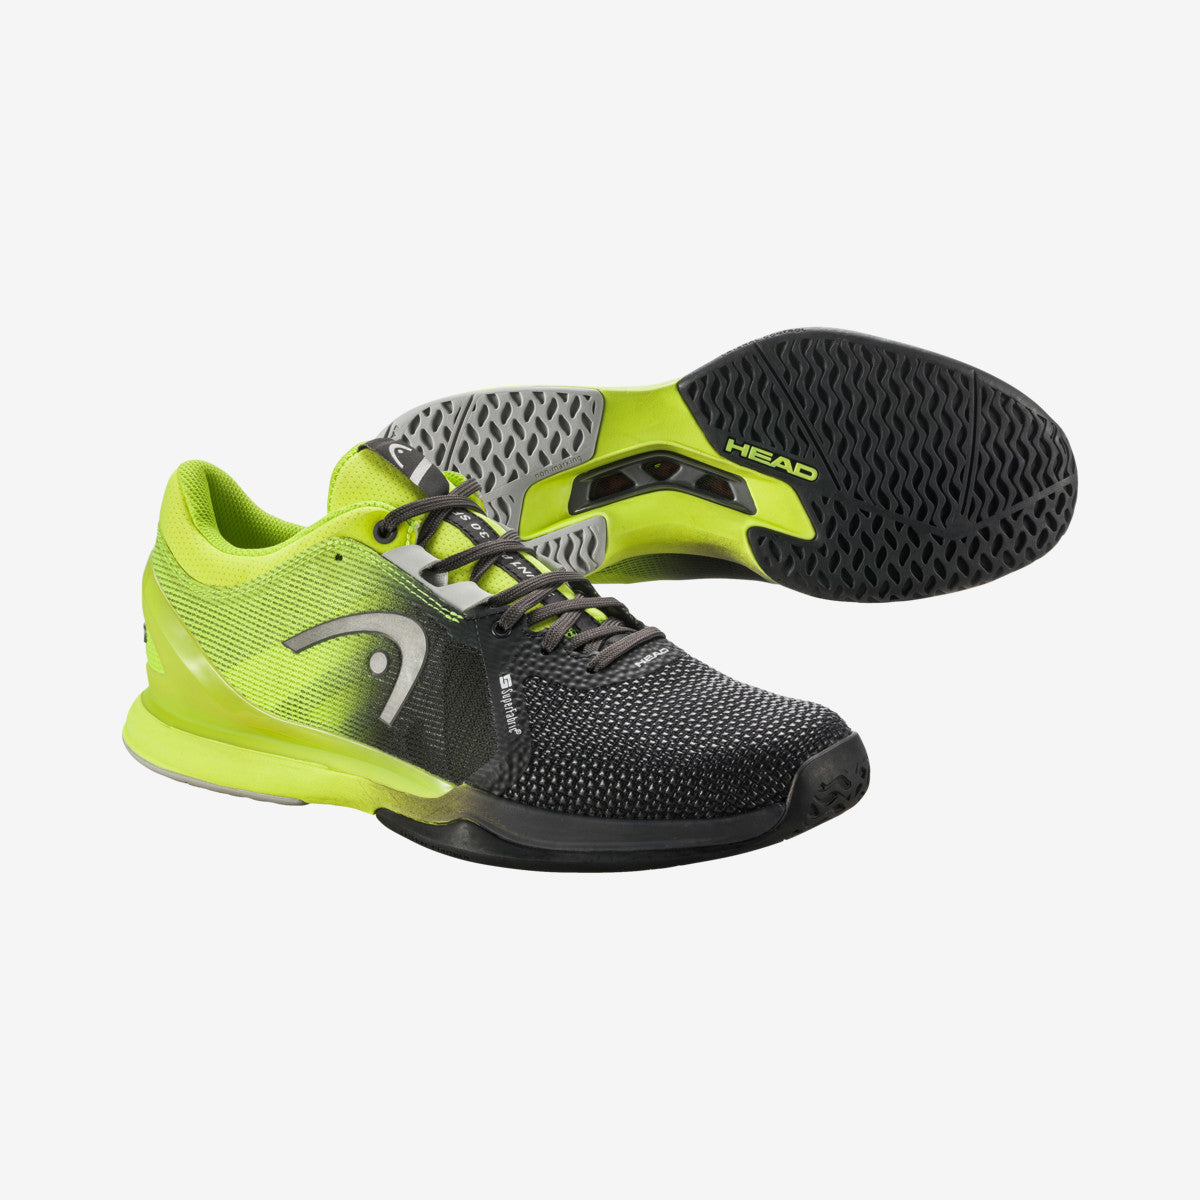 Head Men's Sprint Pro 3.0 SF נעלי טניס לגברים הד ספרינט פרו